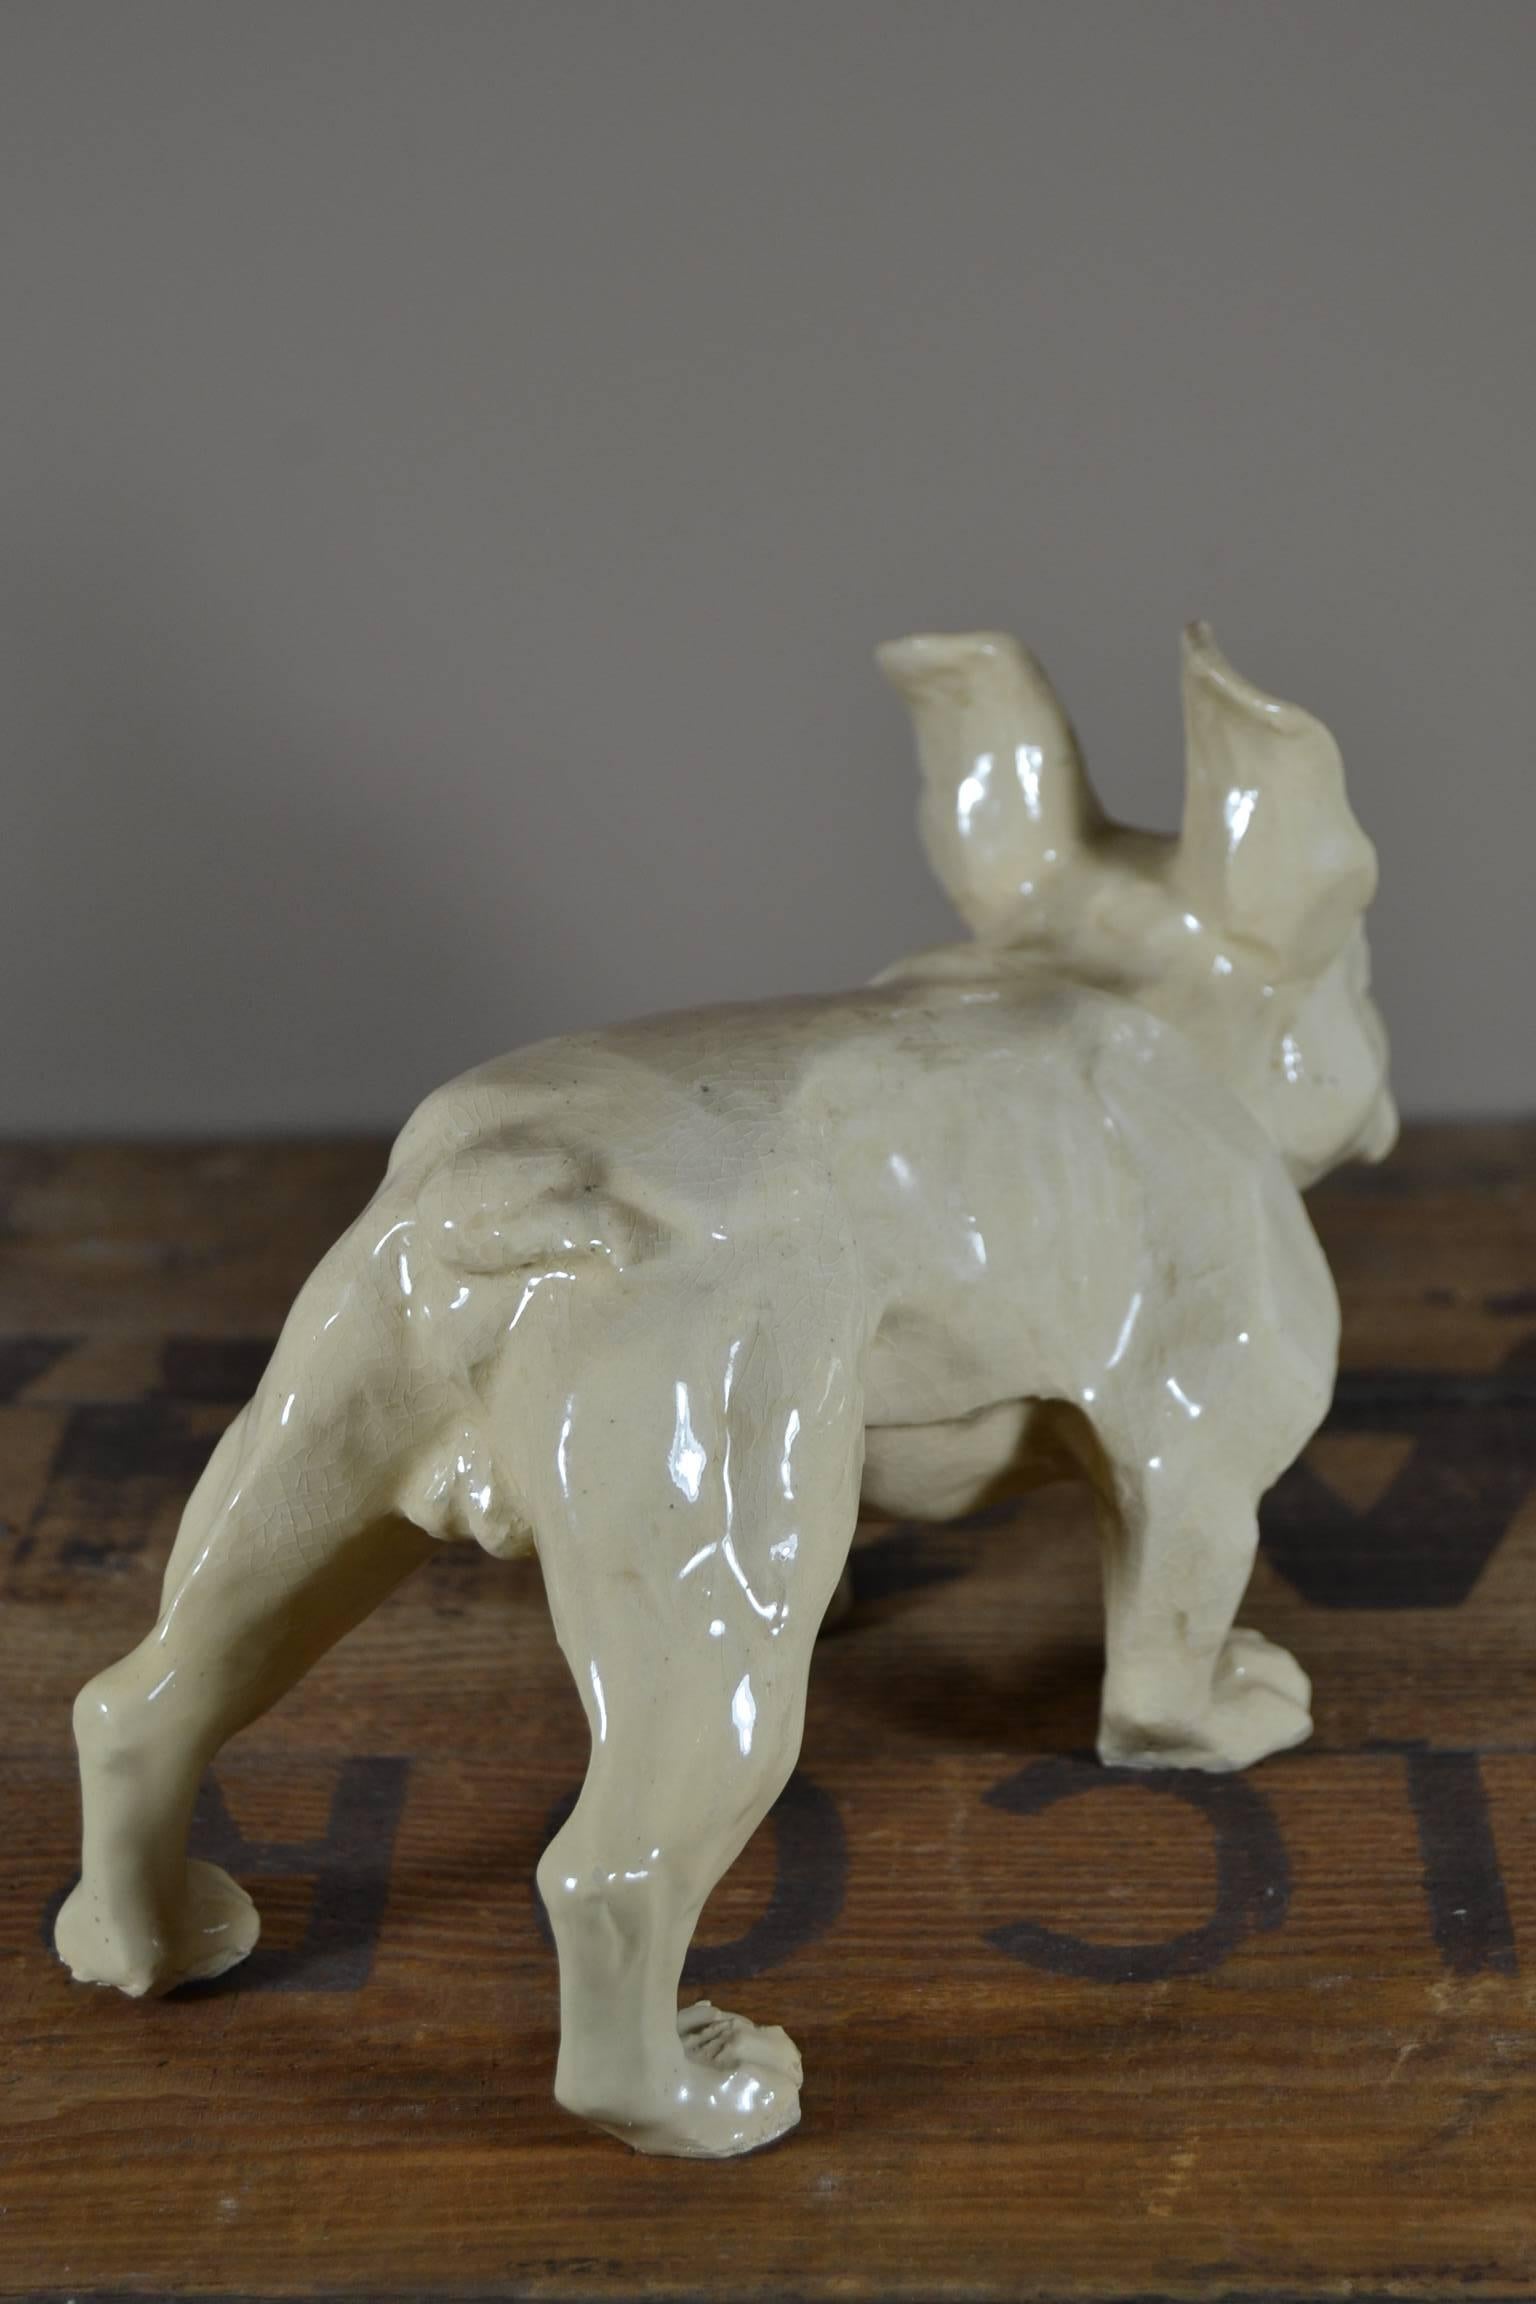 french bulldog art sculpture